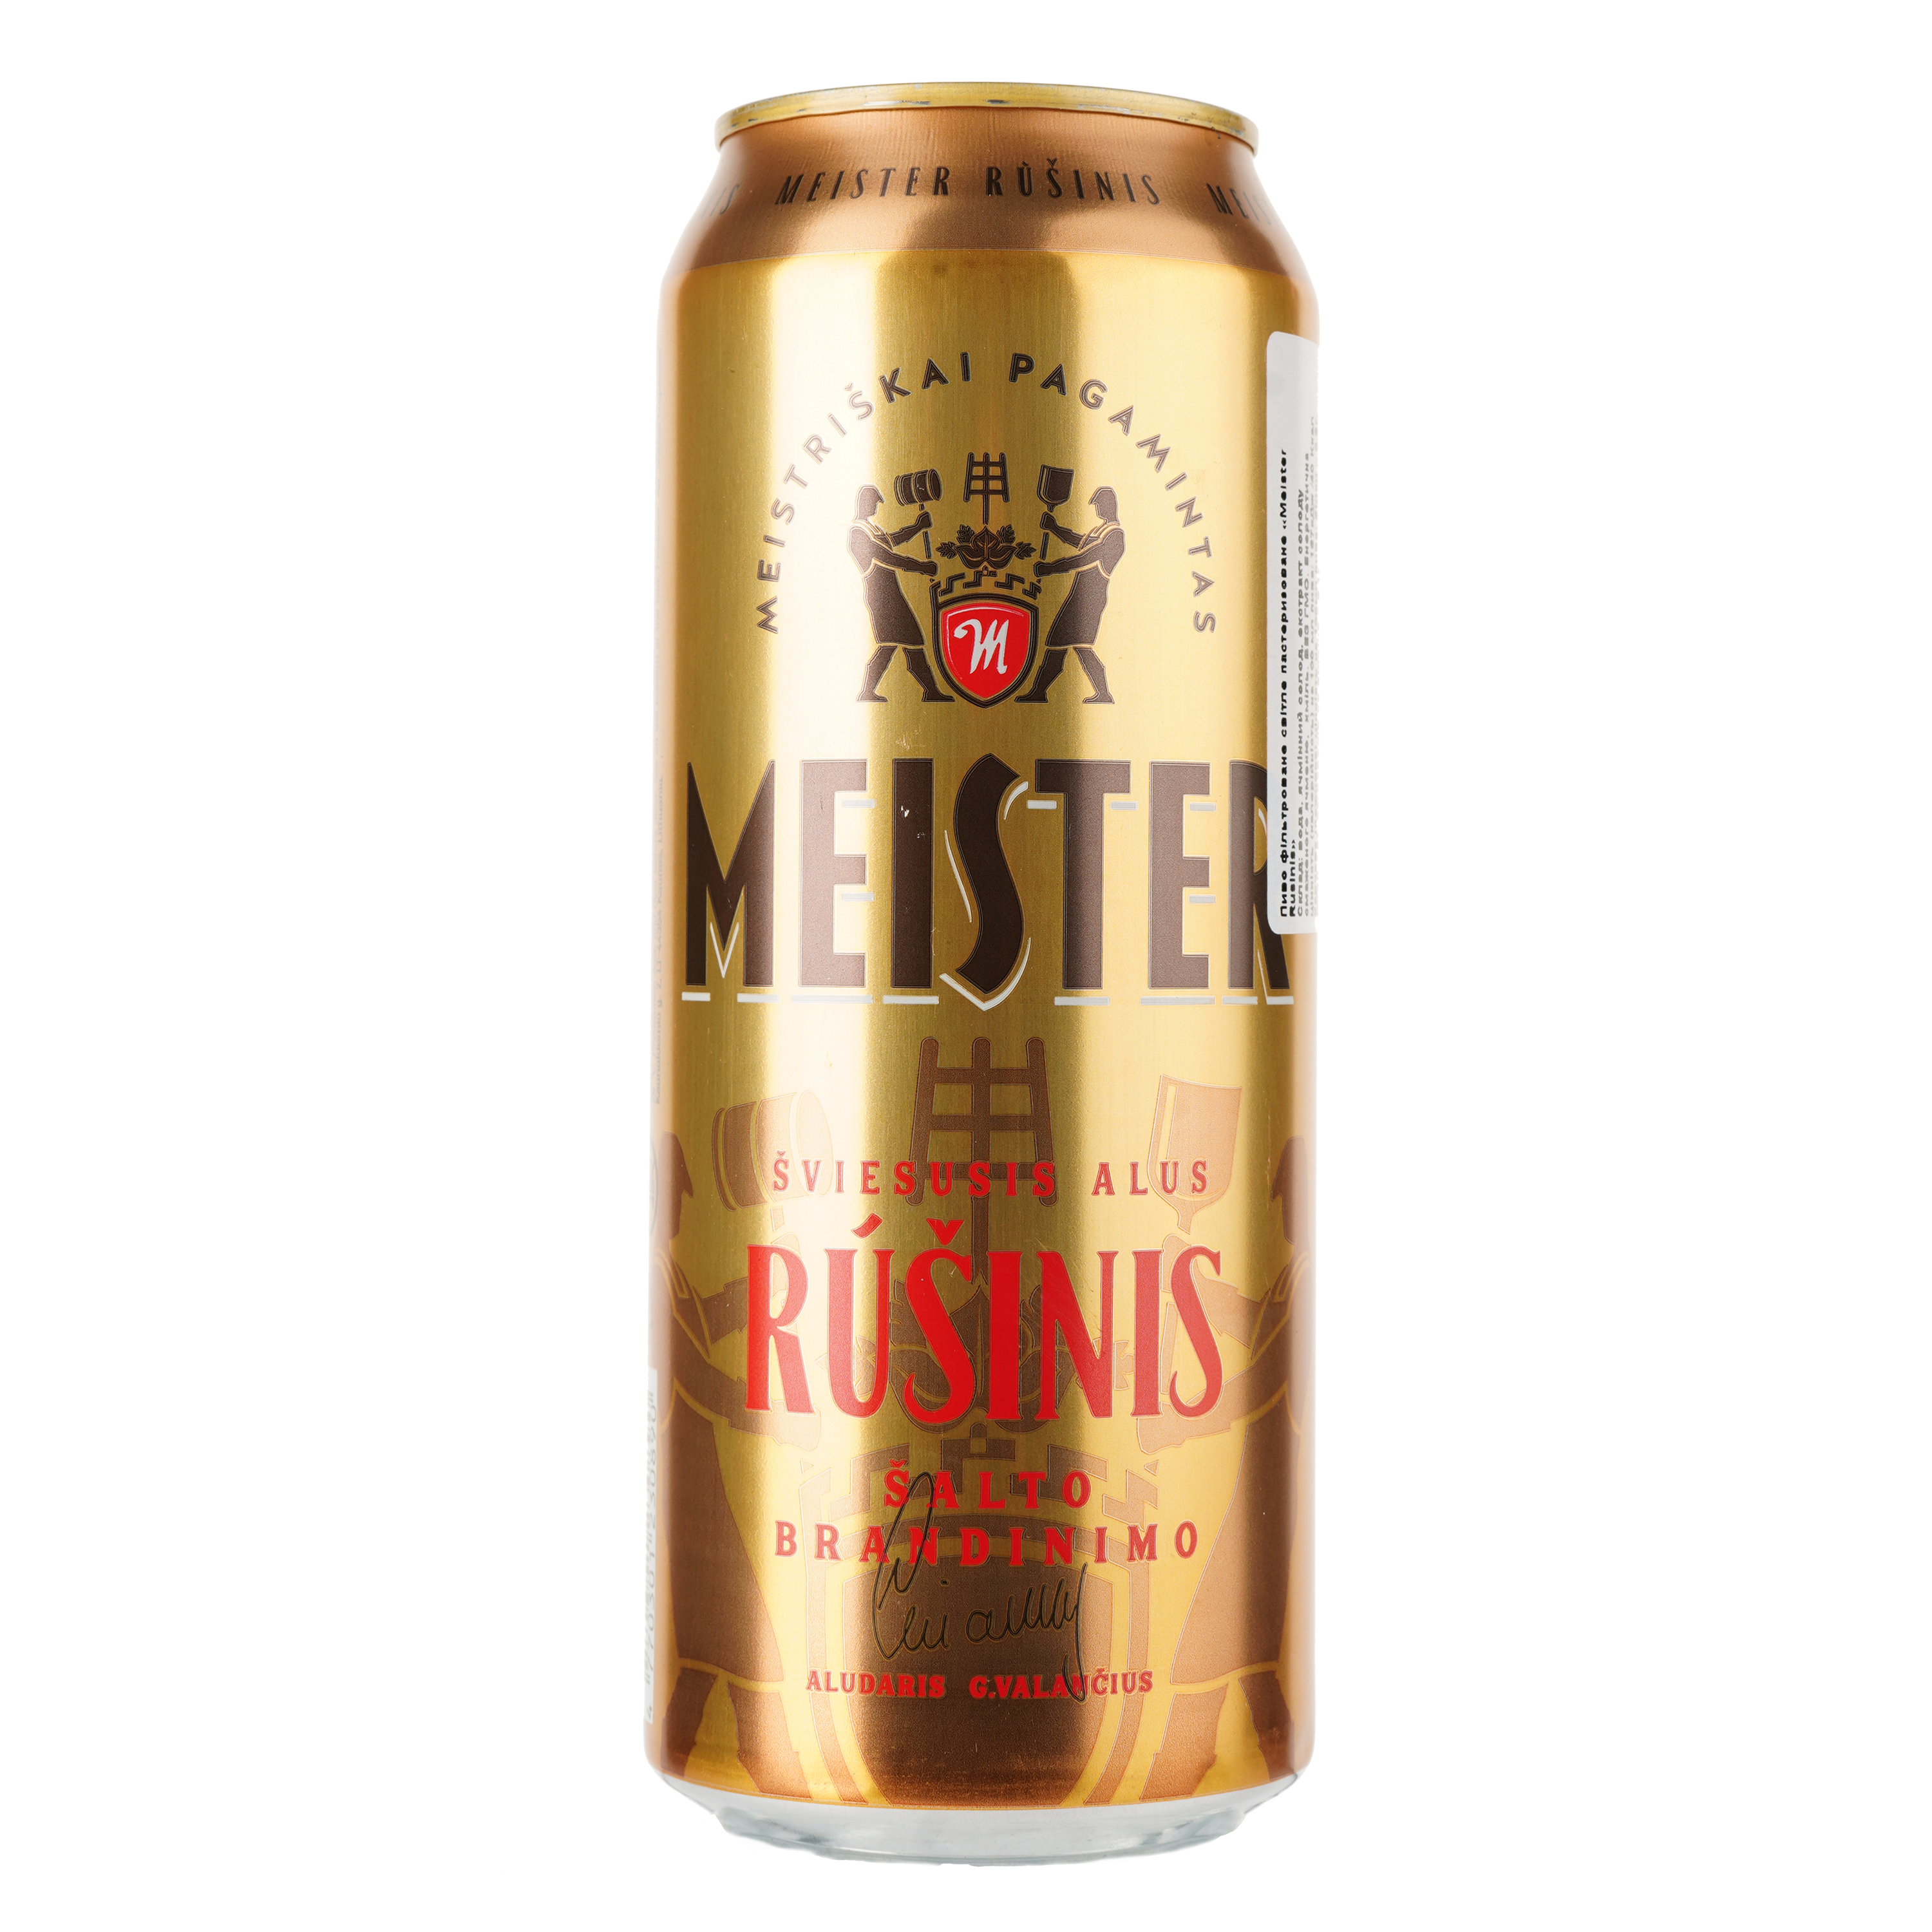 Пиво Meister Rusinis светлое, 5.2%, ж/б, 0.5 л - фото 1